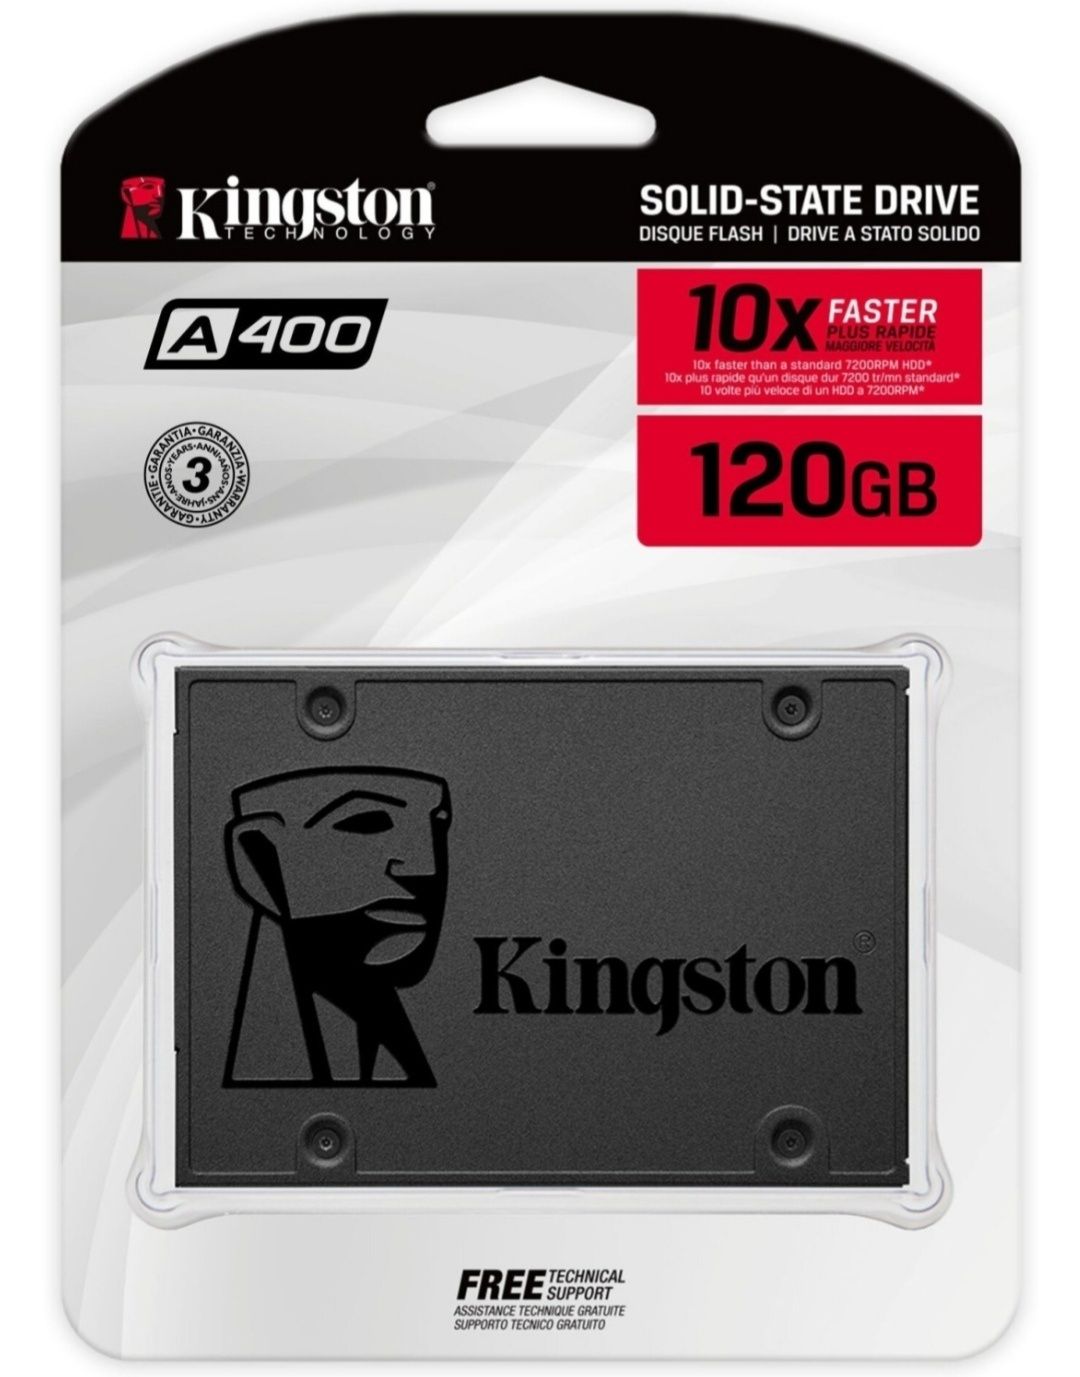 SSD новый, 120гб Kingston